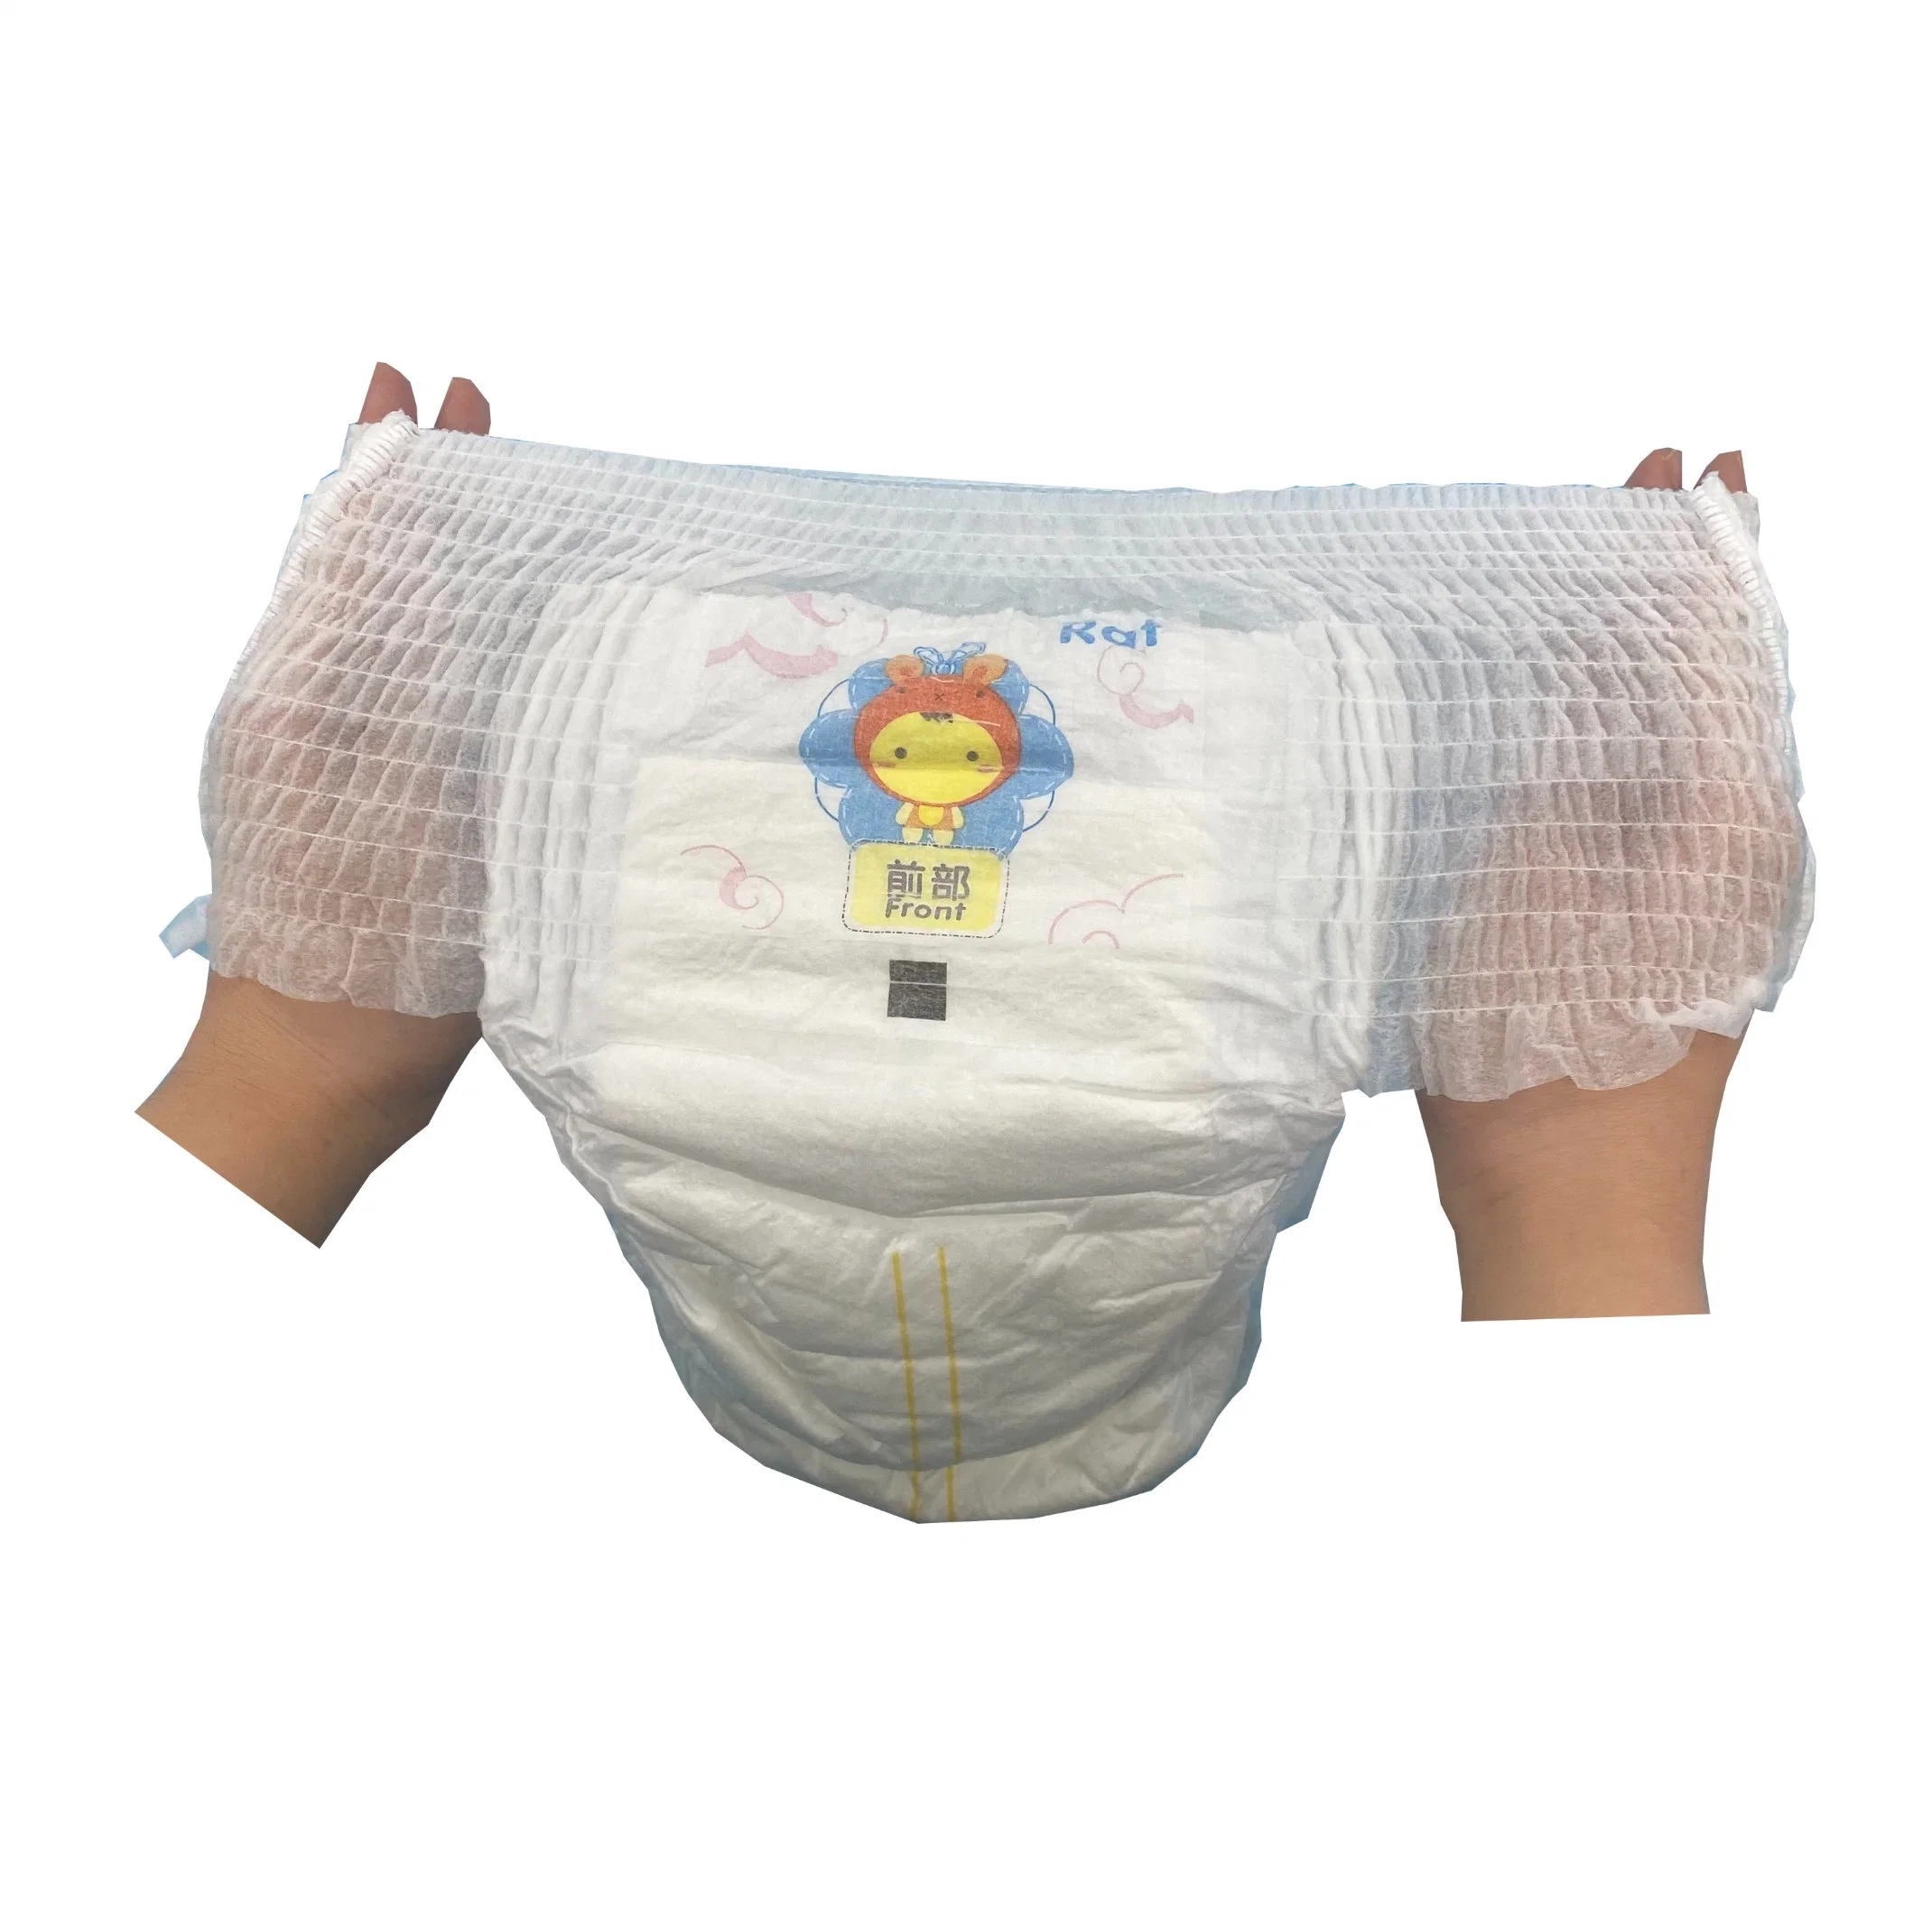 Artigos descartáveis do cuidado do bebé do diaper das calças do bebé Atacado - baratos Preço em fardos